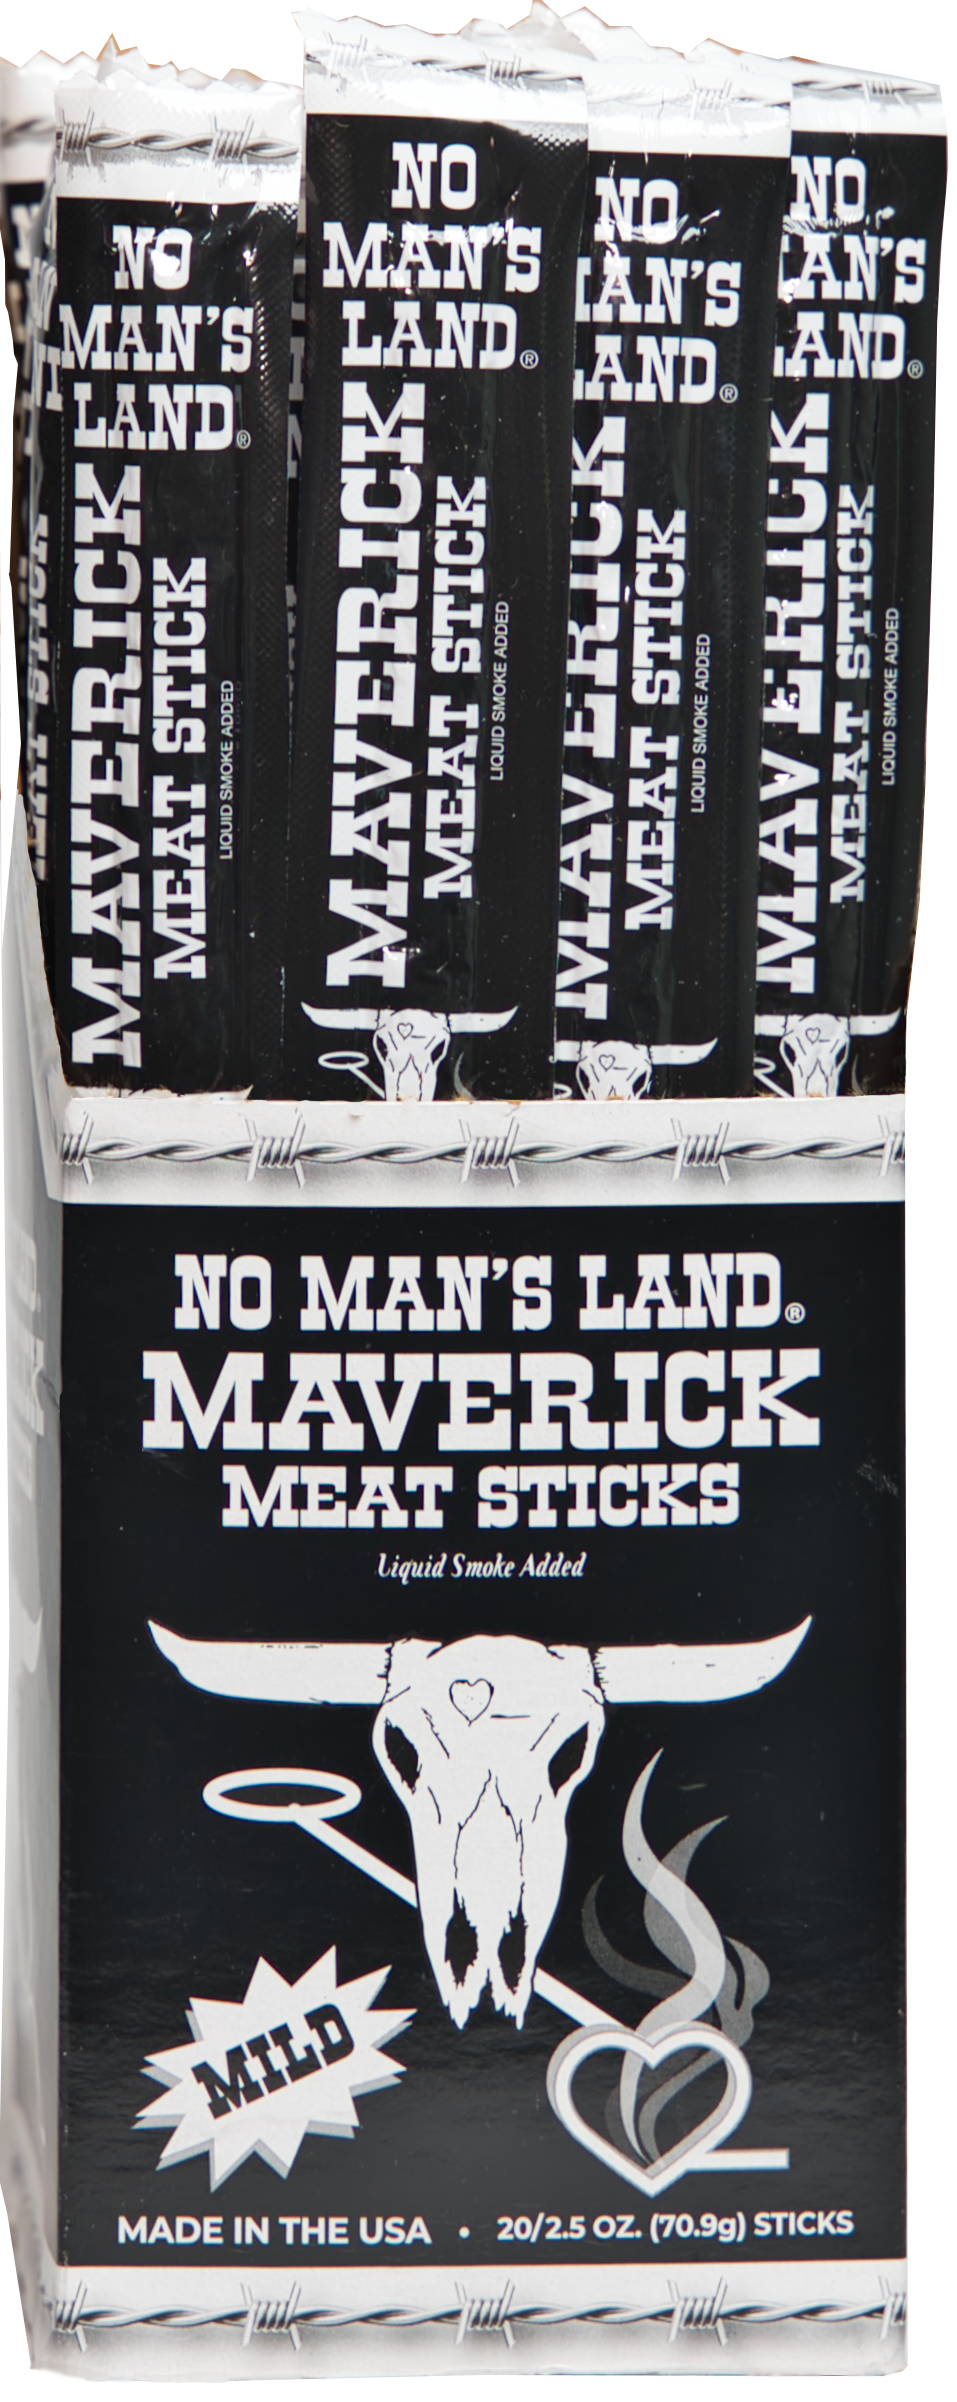 Mild Maverick Sticks